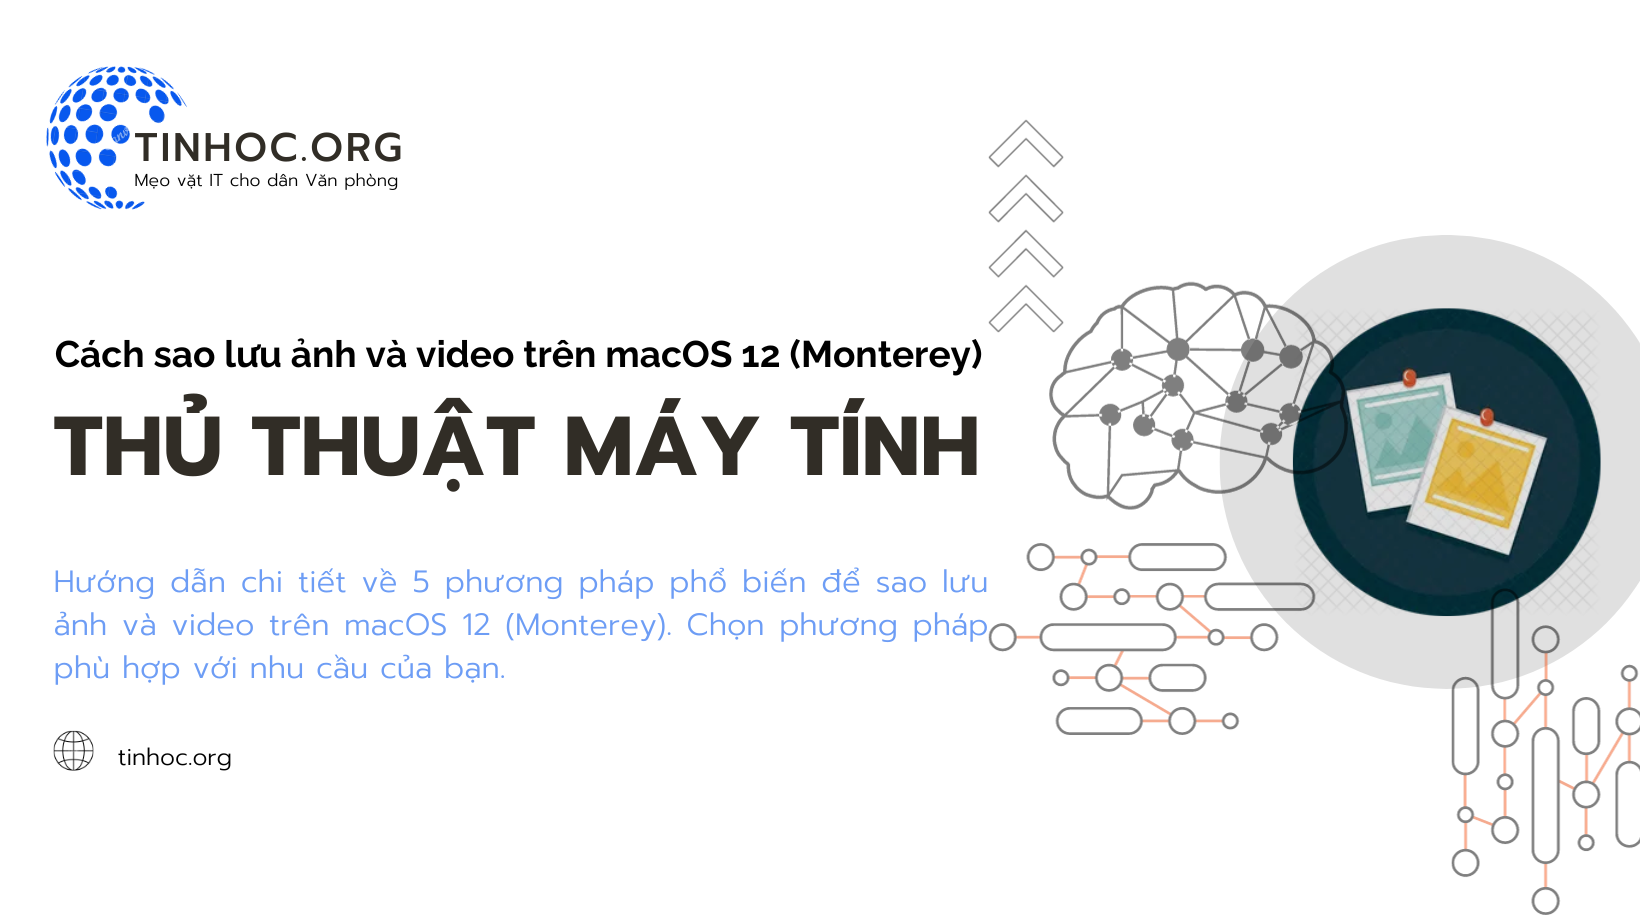 Hướng dẫn chi tiết về 5 phương pháp phổ biến để sao lưu ảnh và video trên macOS 12 (Monterey). Chọn phương pháp phù hợp với nhu cầu của bạn.